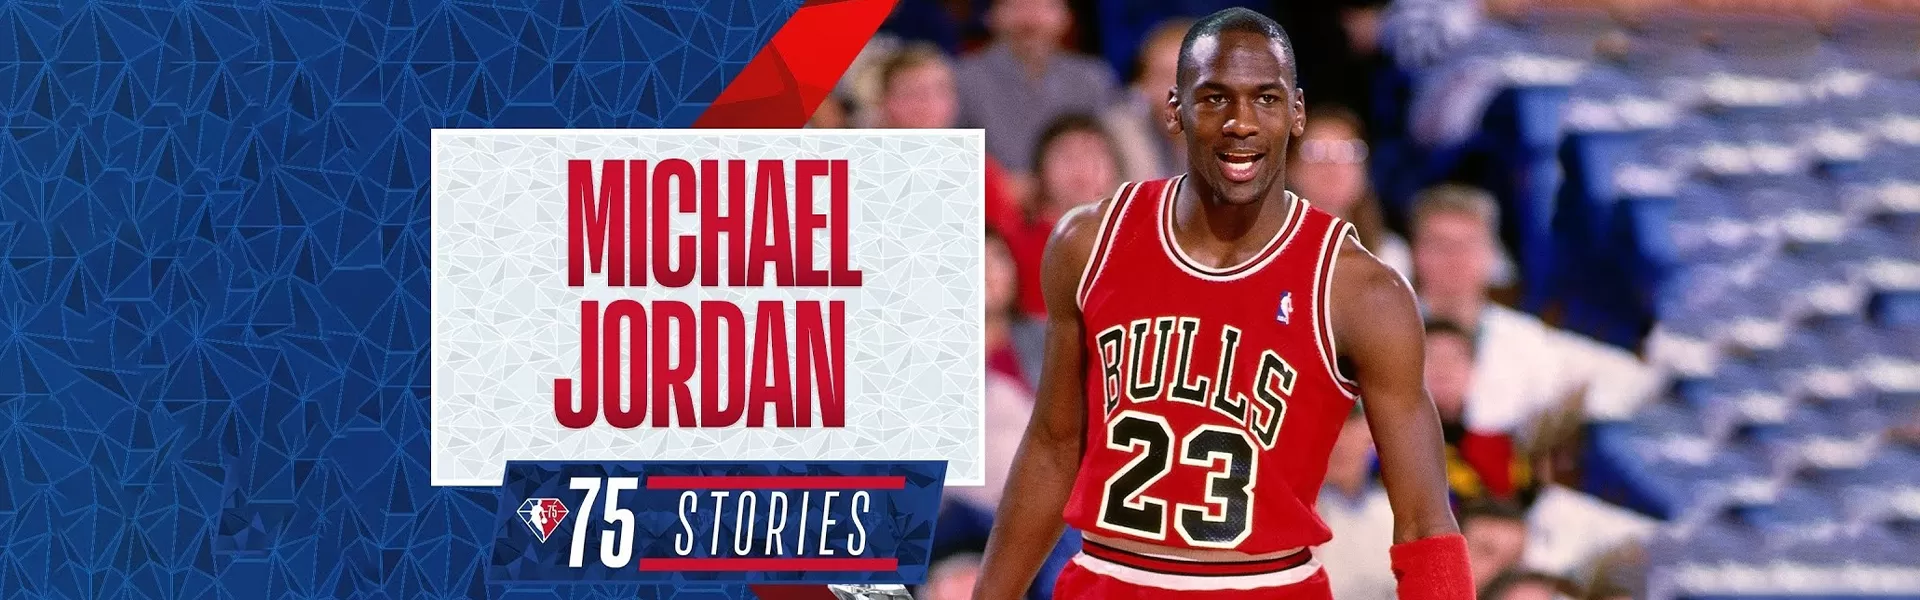 Michael Jordan Banner - buybasketballnow